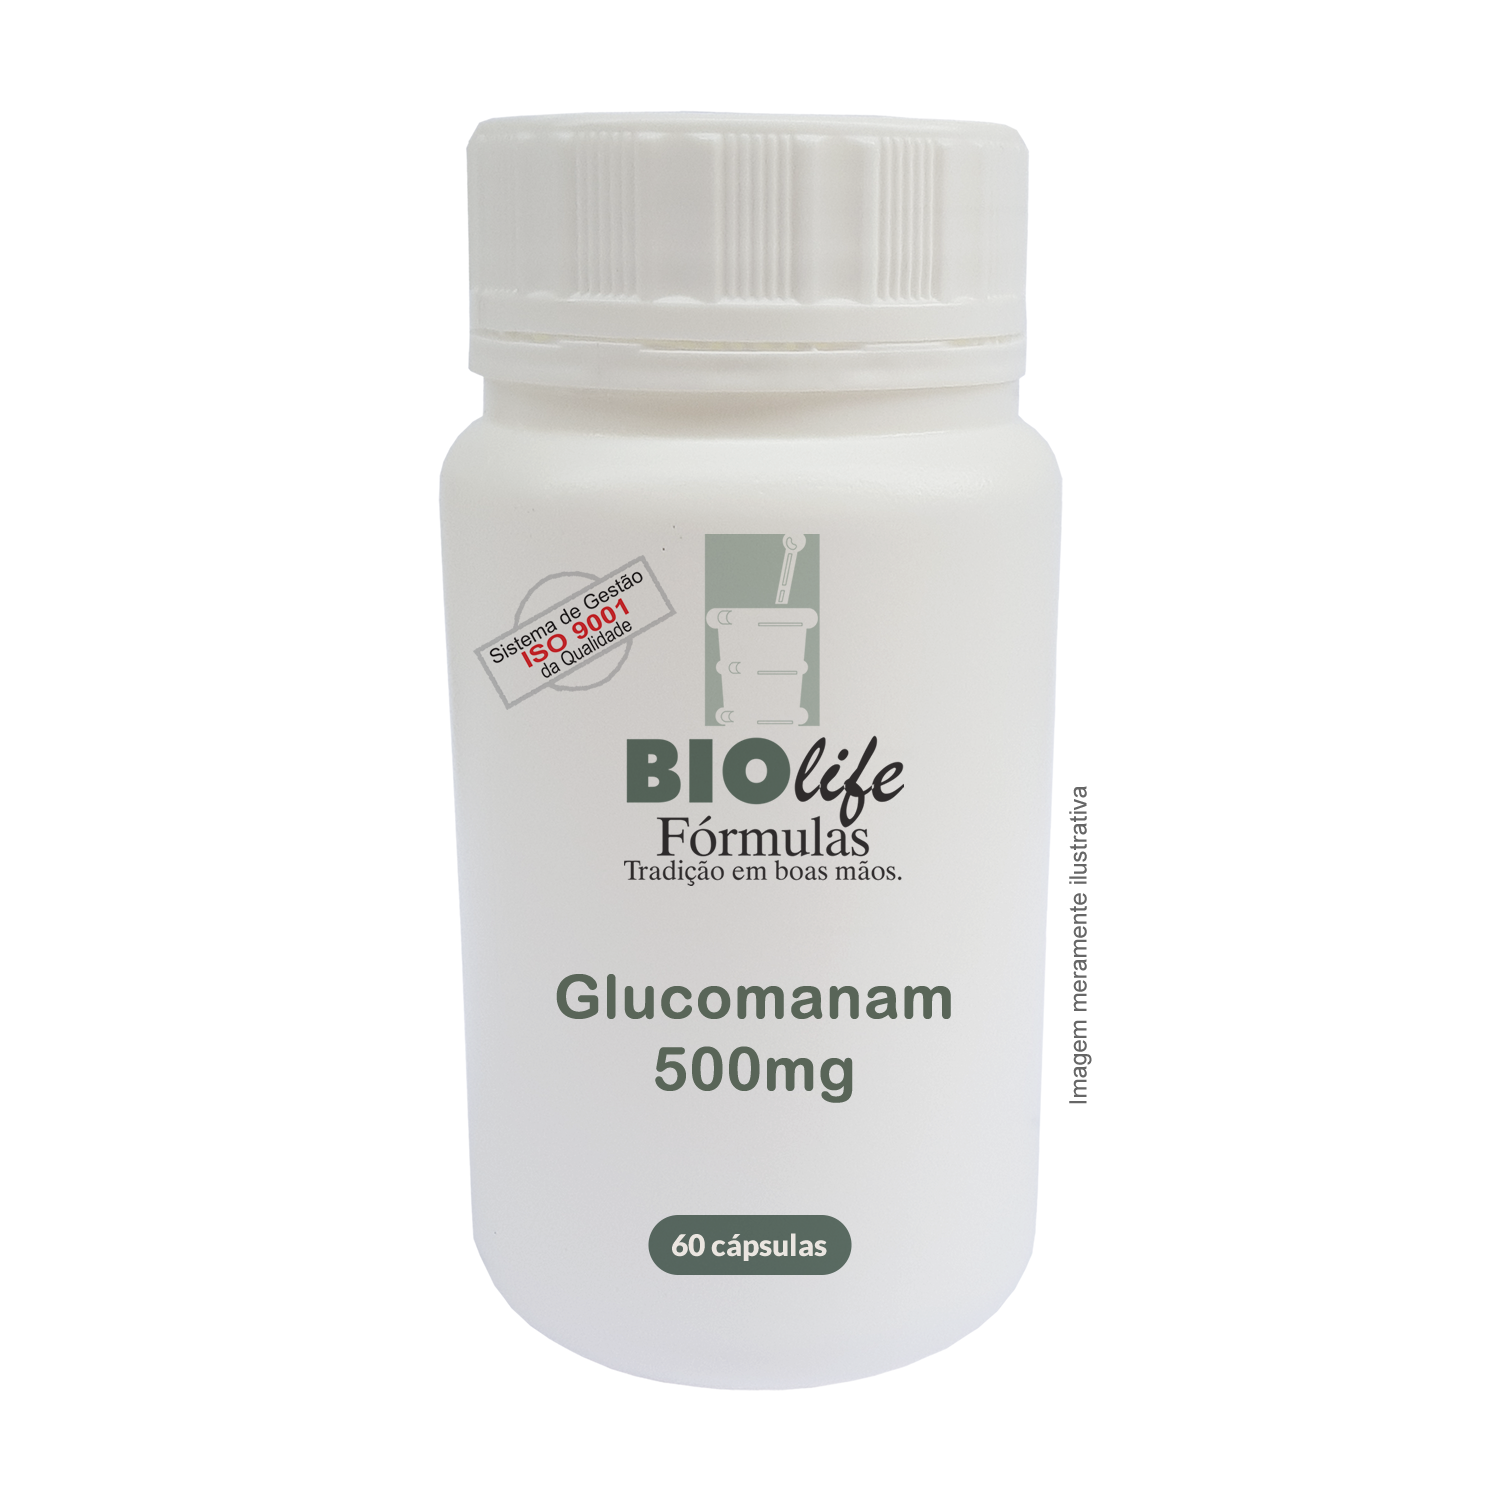 GLUCOMANAM - Sensação de Plenitude Gástrica / Controle da Obesidade - BioLife